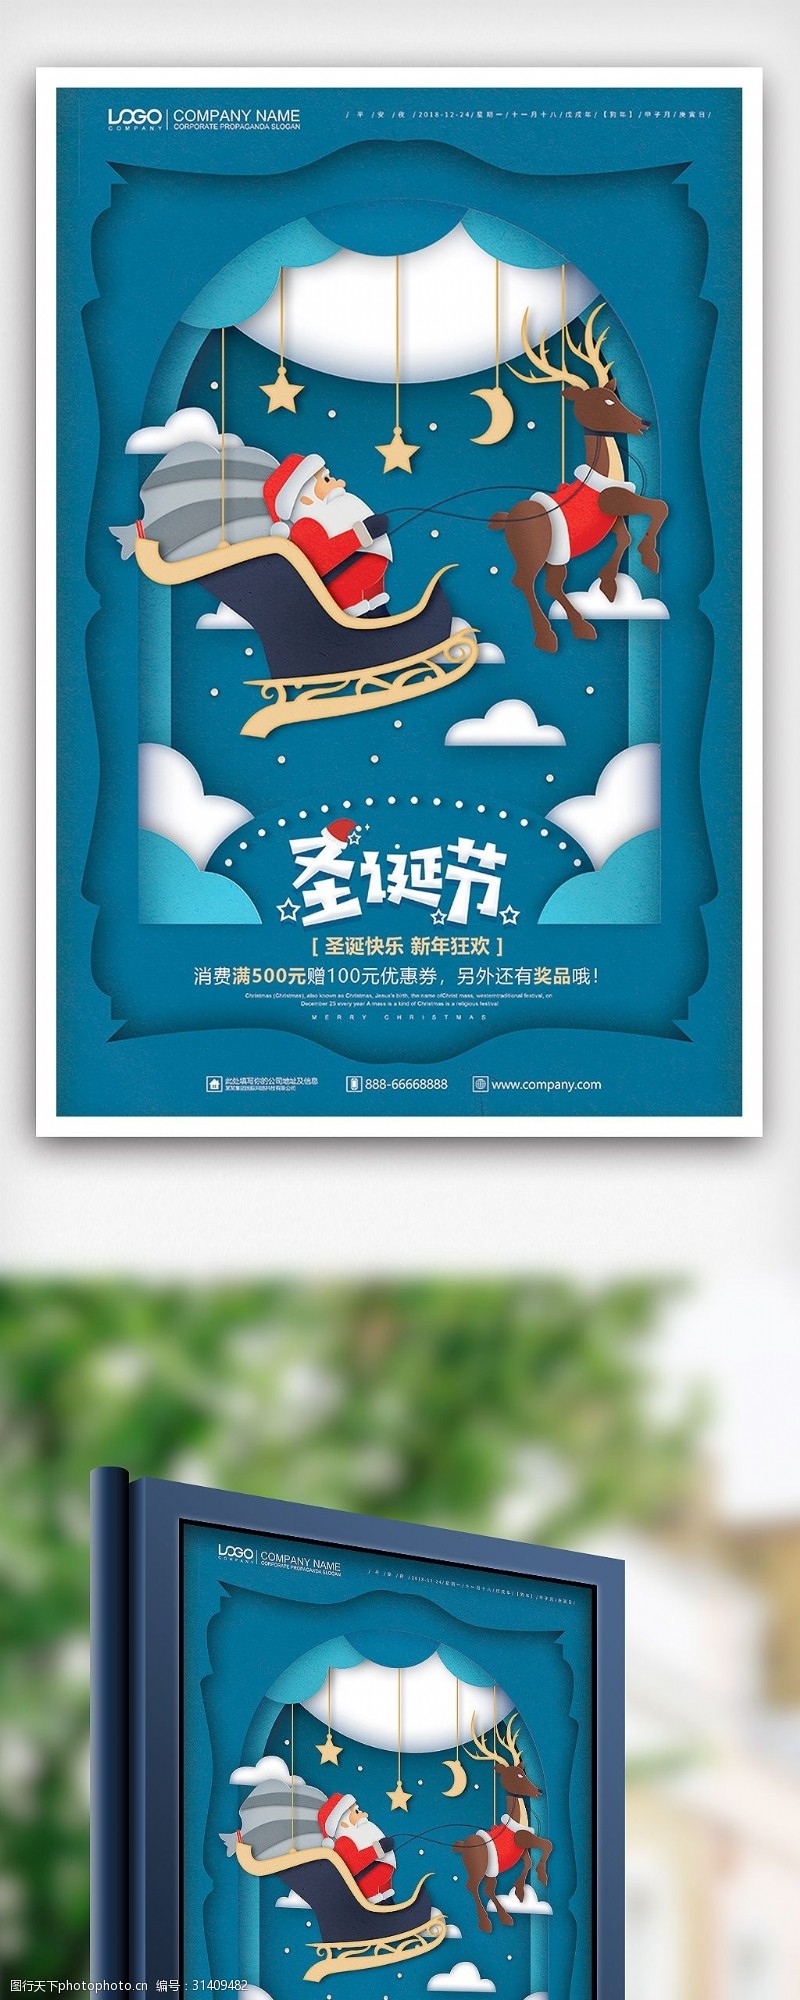 圣诞模板下载蓝色剪纸风圣诞节海报设计